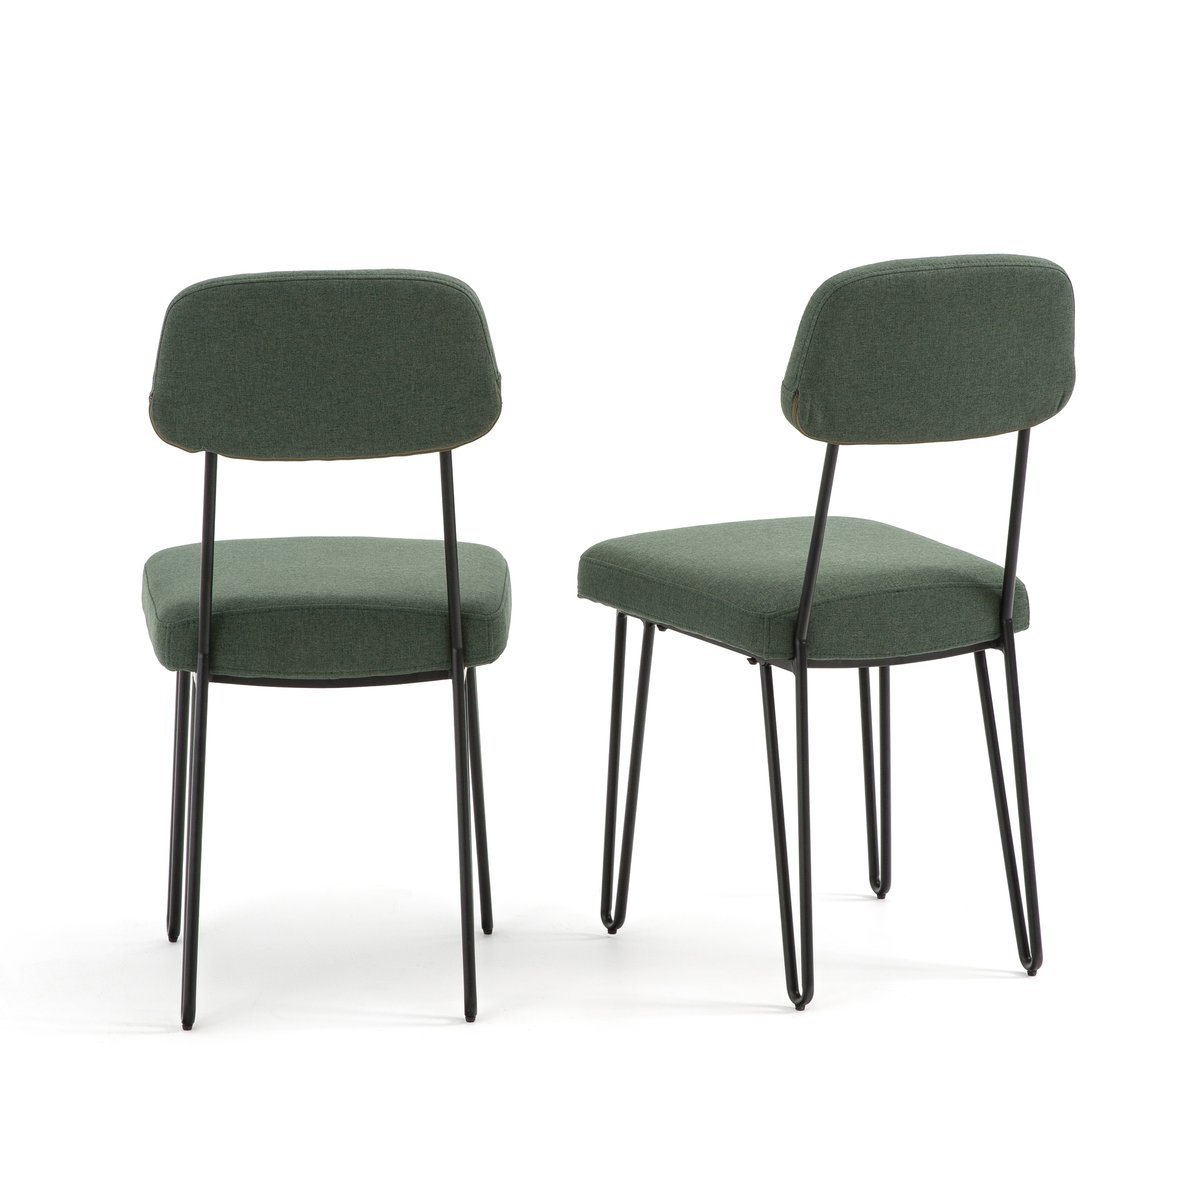 Комплект из  винтажных стульев La Redoute Koper единый размер зеленый - фото 2